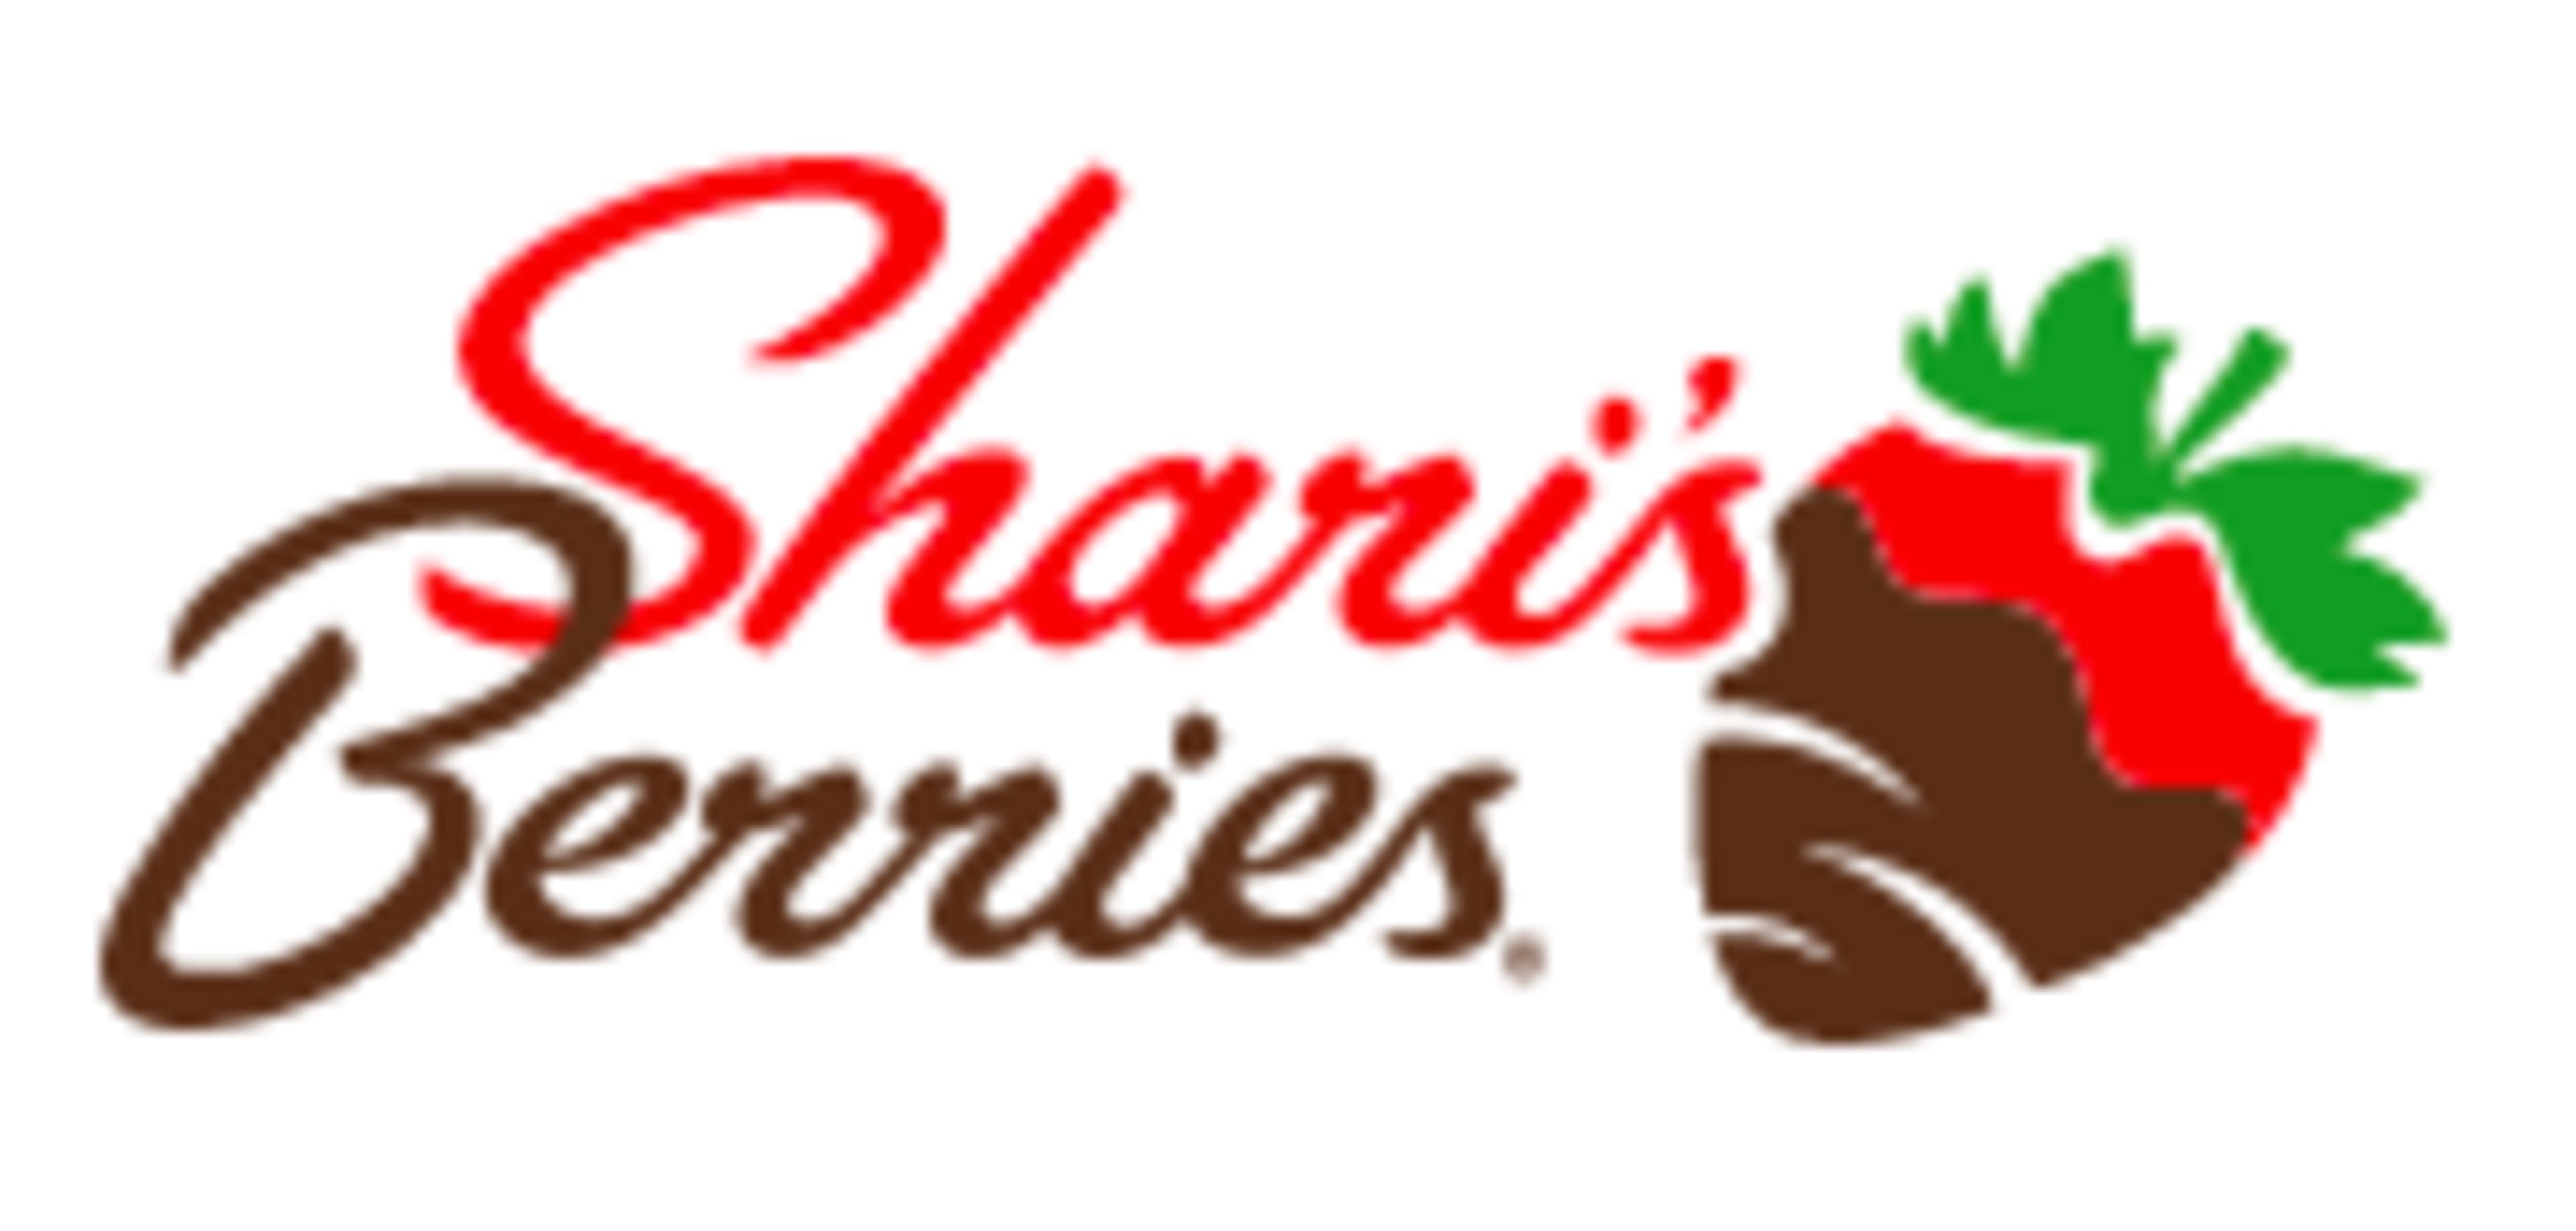 Shari's BerriesCode